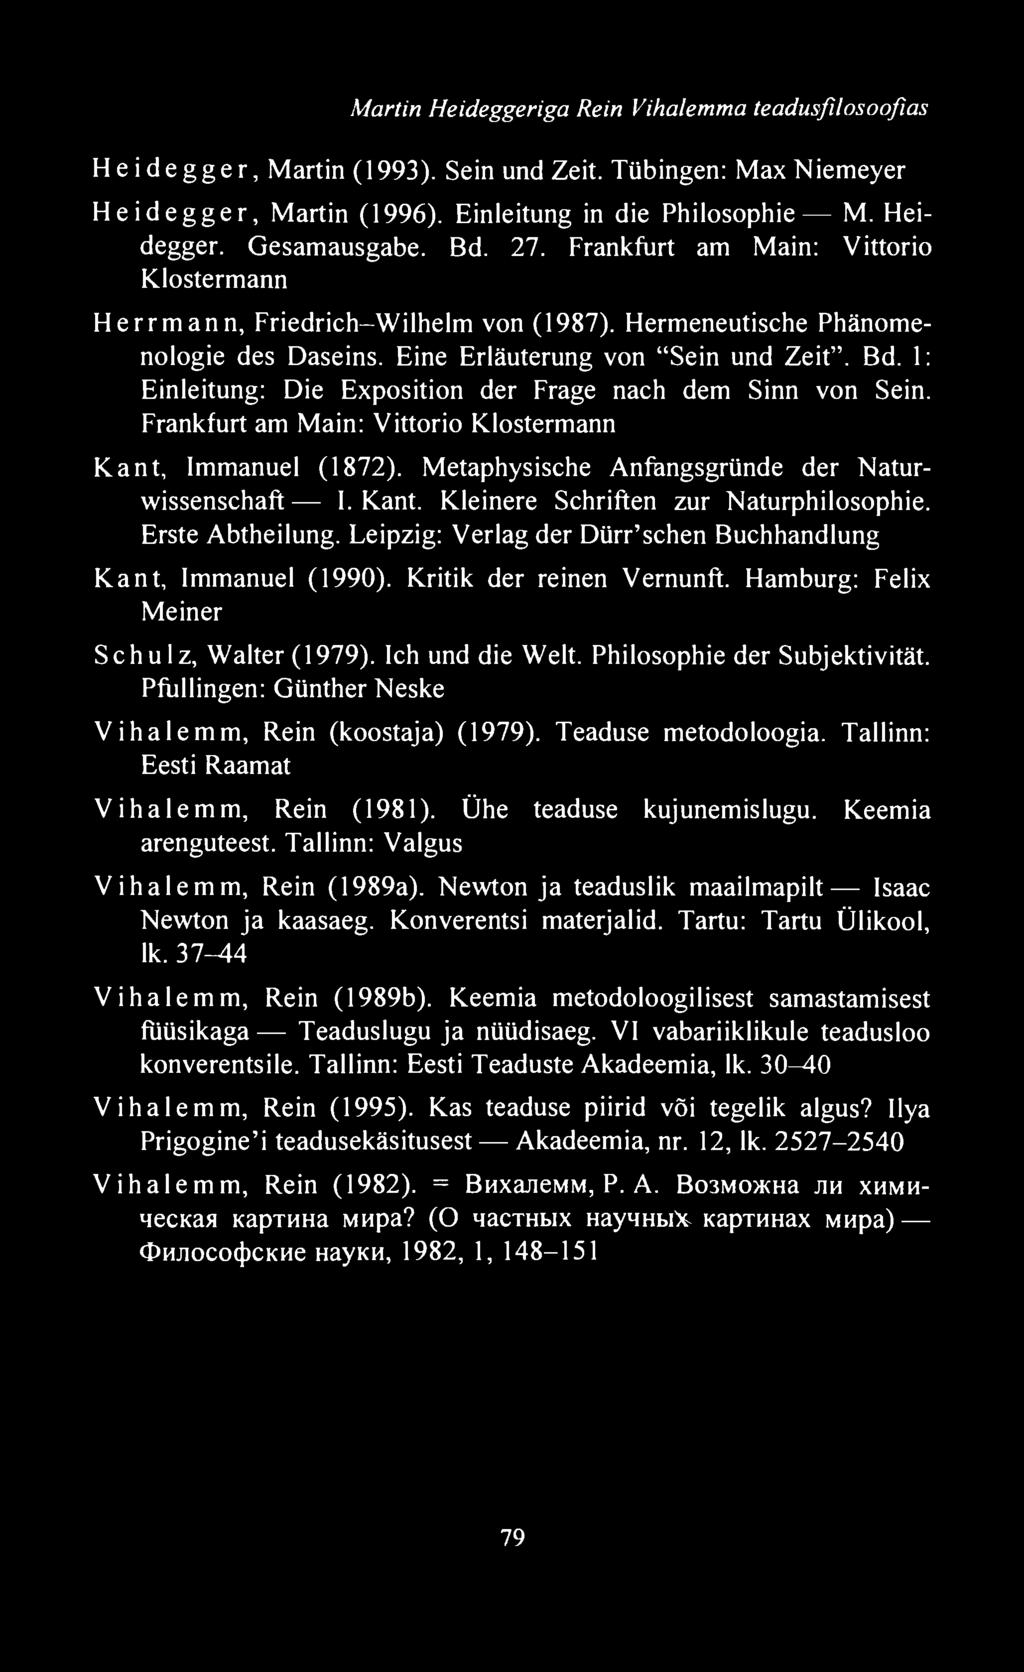 1 : Einleitung: Die Exposition der Frage nach dem Sinn von Sein. Frankfurt am Main: Vittorio Klostermann Kant, Immanuel (1872). Metaphysische Anfangsgründe der Naturwissenschaft I.Kant. Kleinere Schriften zur Naturphilosophie.